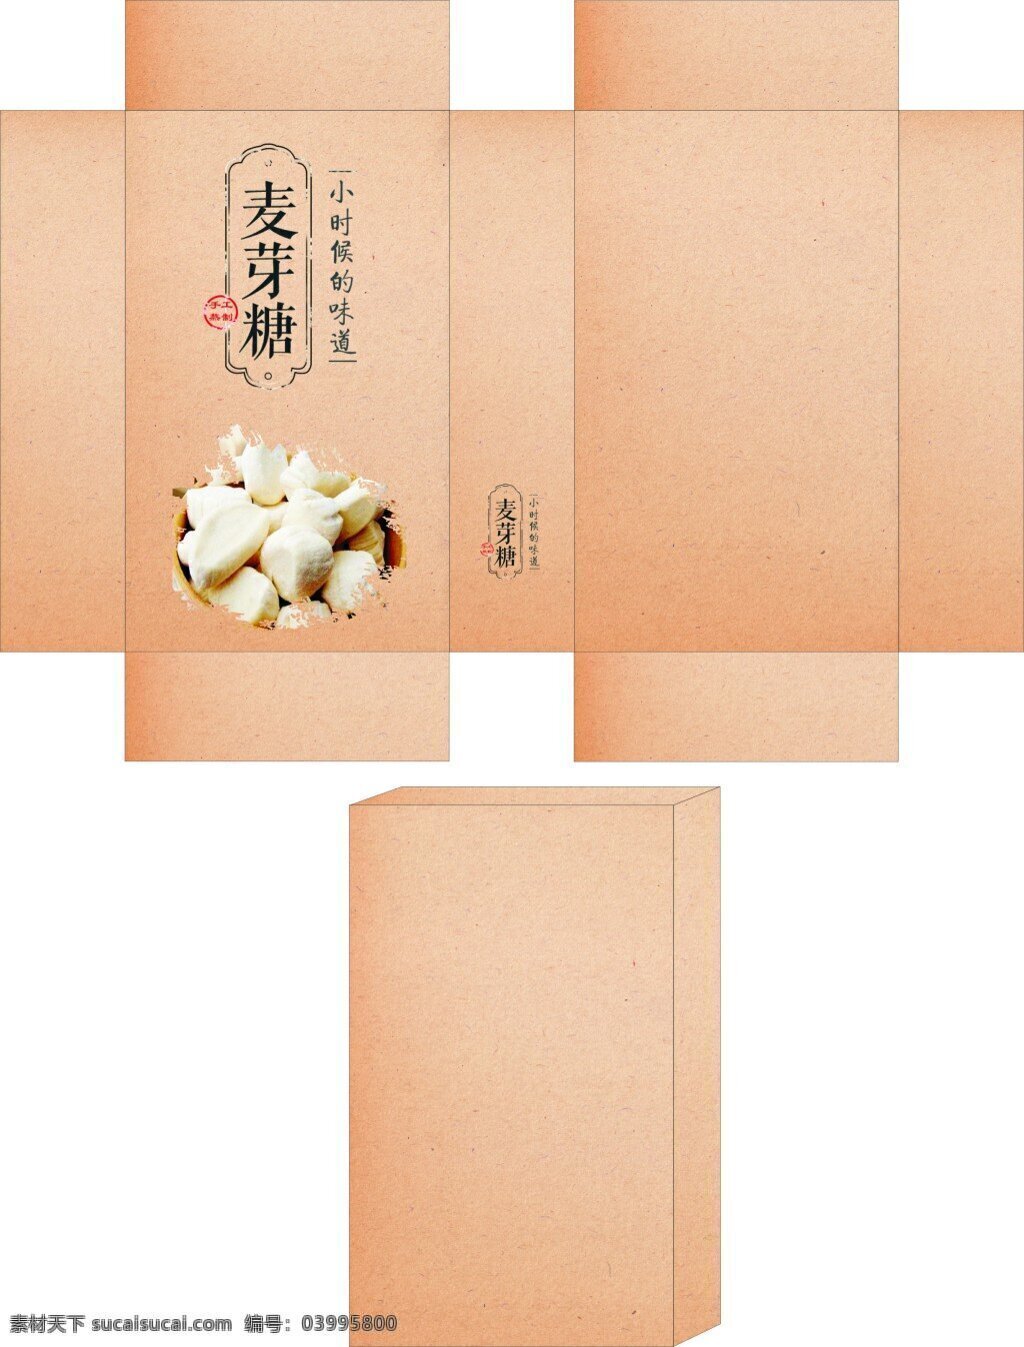 麦芽糖 牛皮纸 包装盒 产品包装盒 牛皮纸包装盒 礼品盒 礼物盒